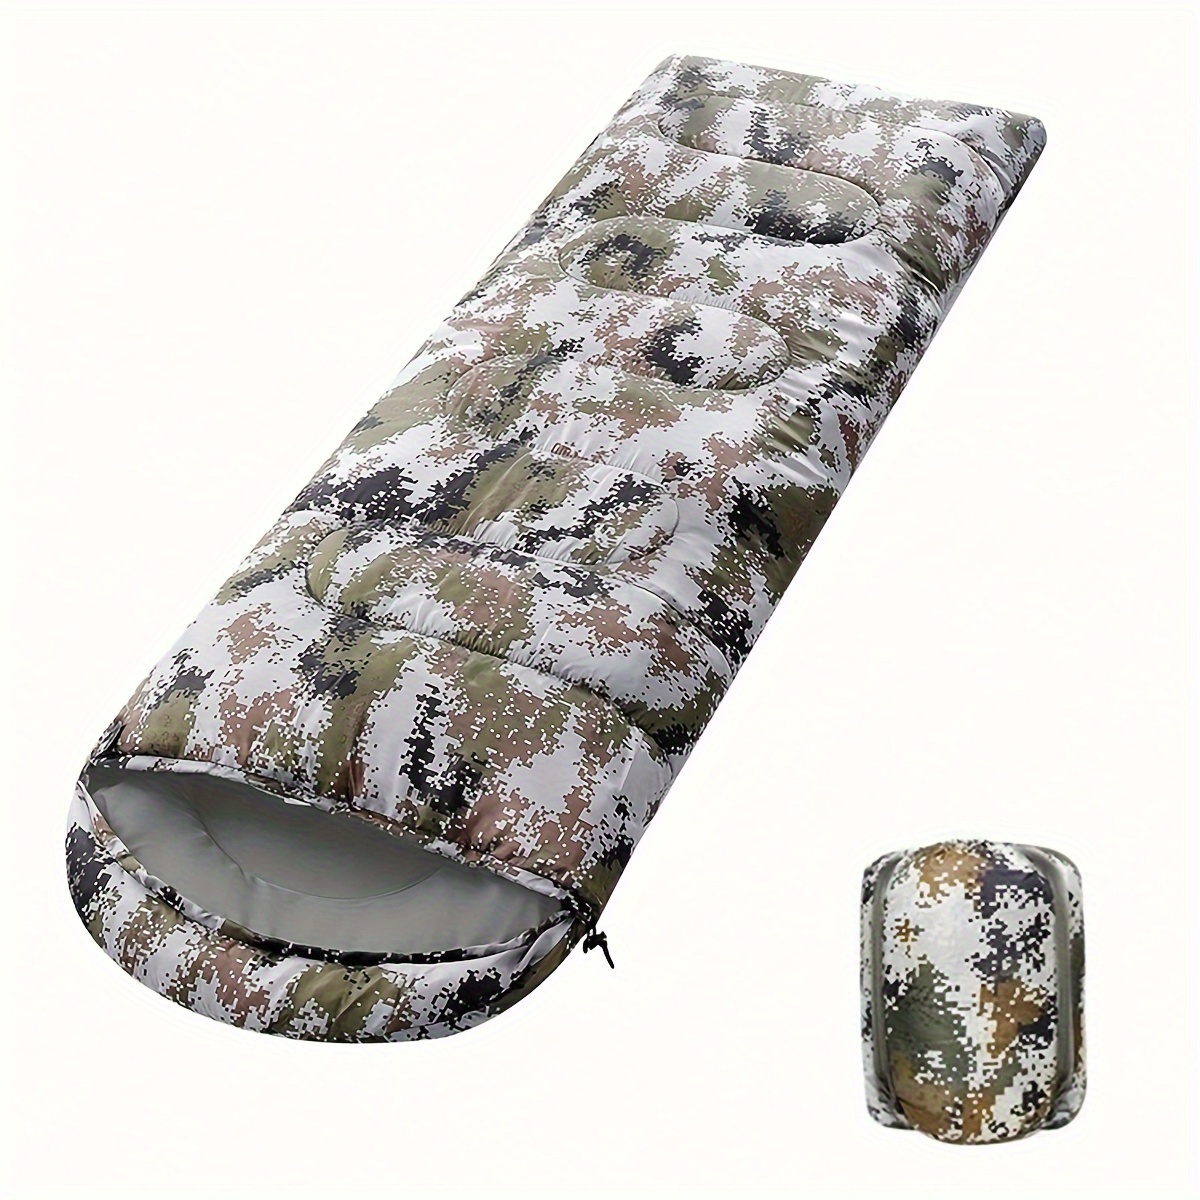 

Sacs de couchage - 32-77℉ avec sac de compression, sacs de couchage portables et légers imperméables pour 3-4 saisons, camping, randonnée, randonnée et plein air